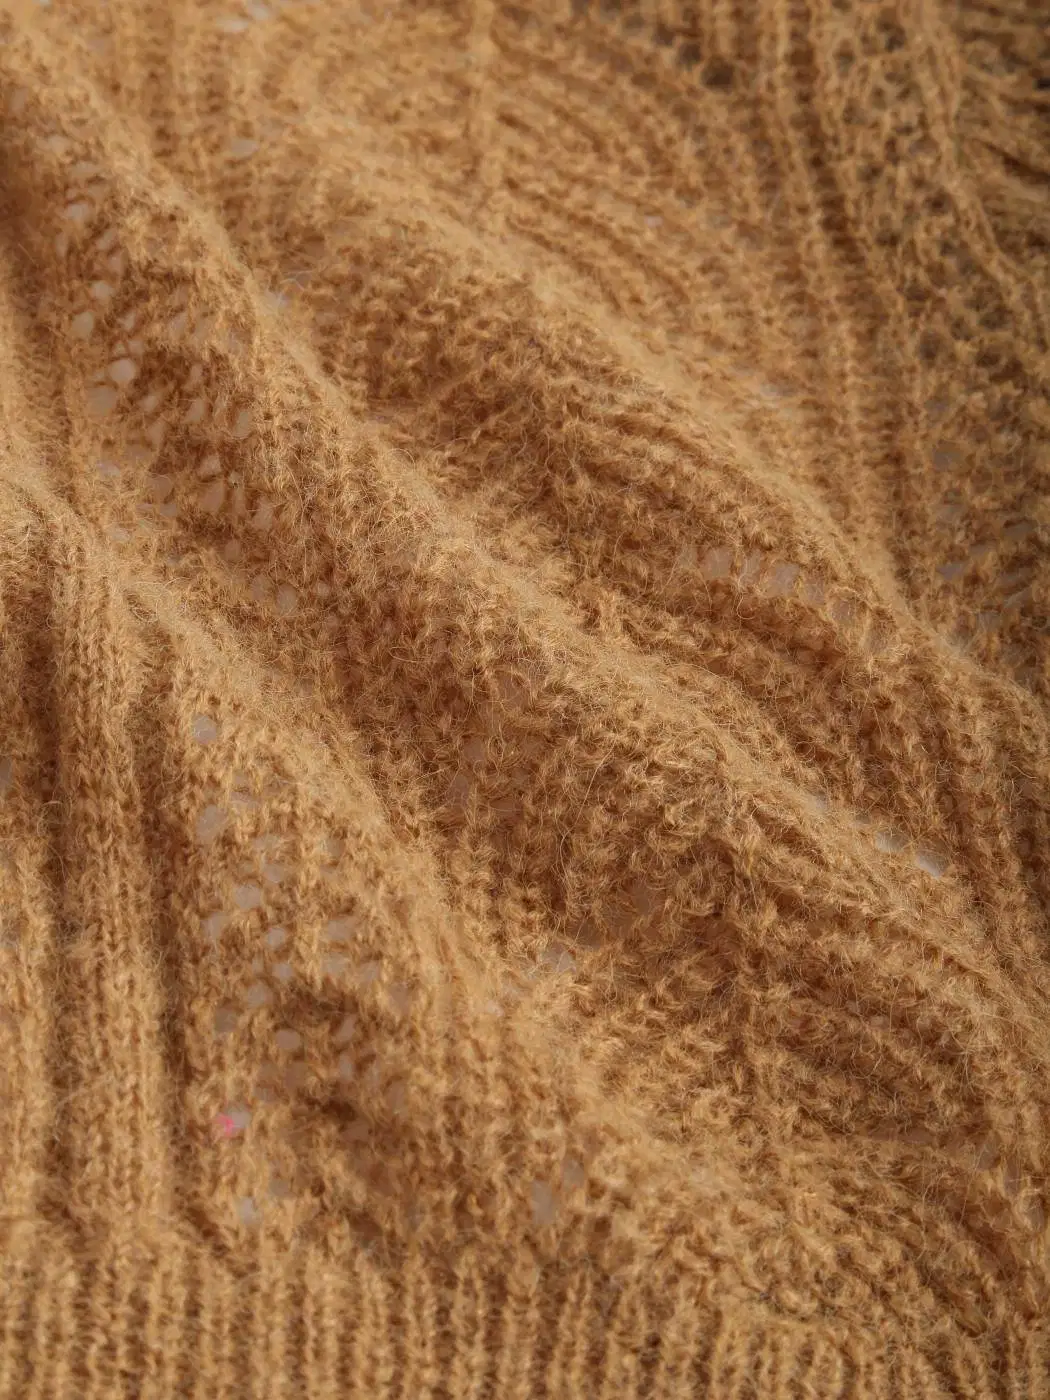 Botón hueco sólido marrón hasta Knit Cardigan diseños personalizados de estilo de moda la elegancia de la mujer de tejer jersey con cuello en V Buttoned Damas tejidos de punto jersey de manga larga